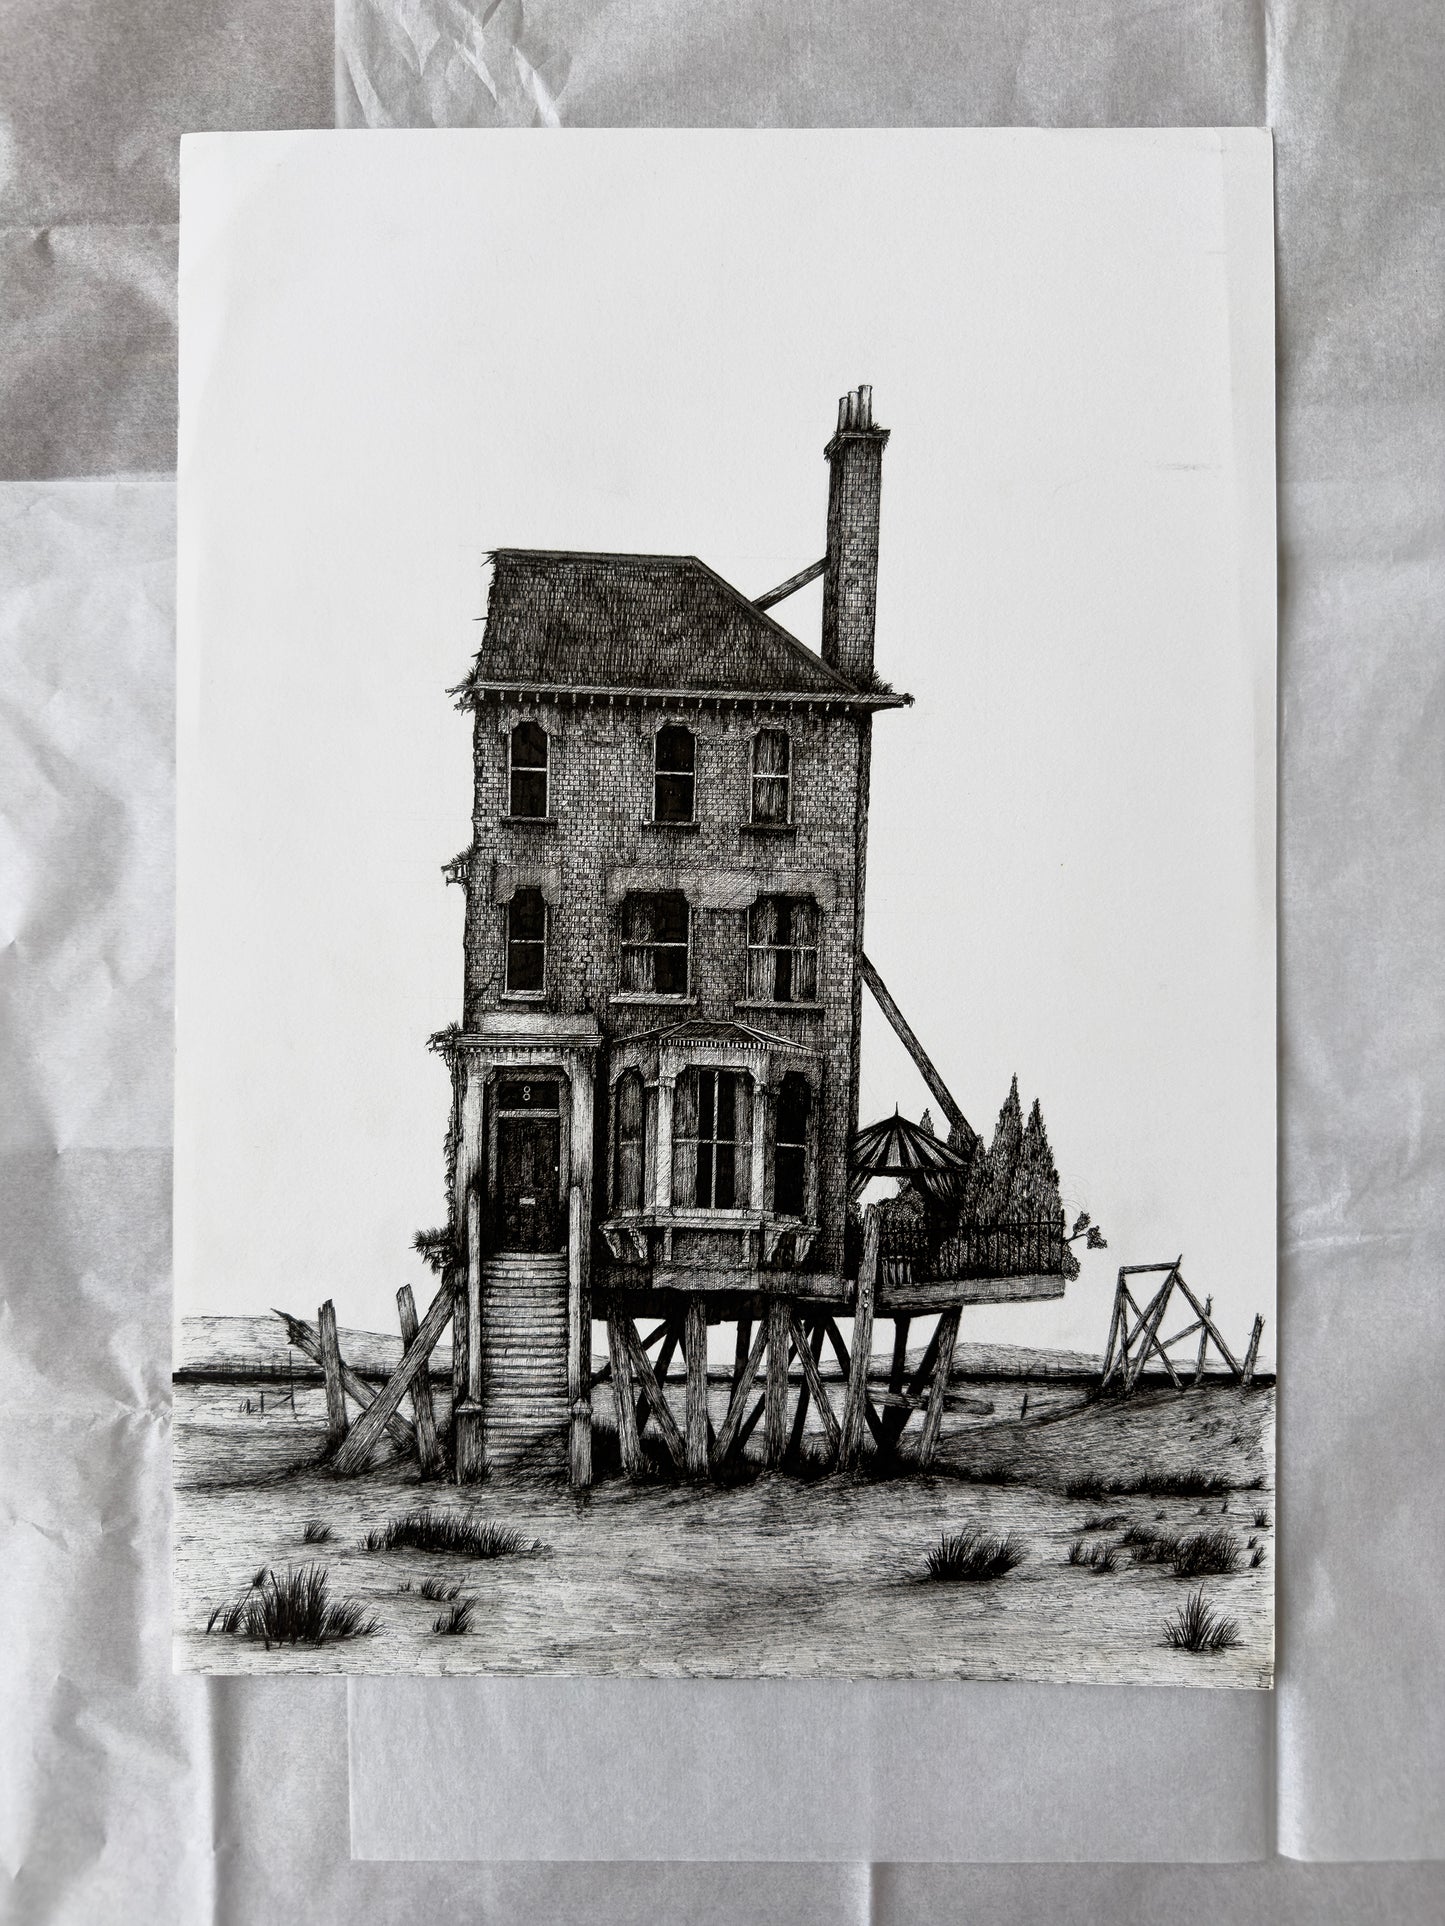 Estuary house (Original A3 Drawing)